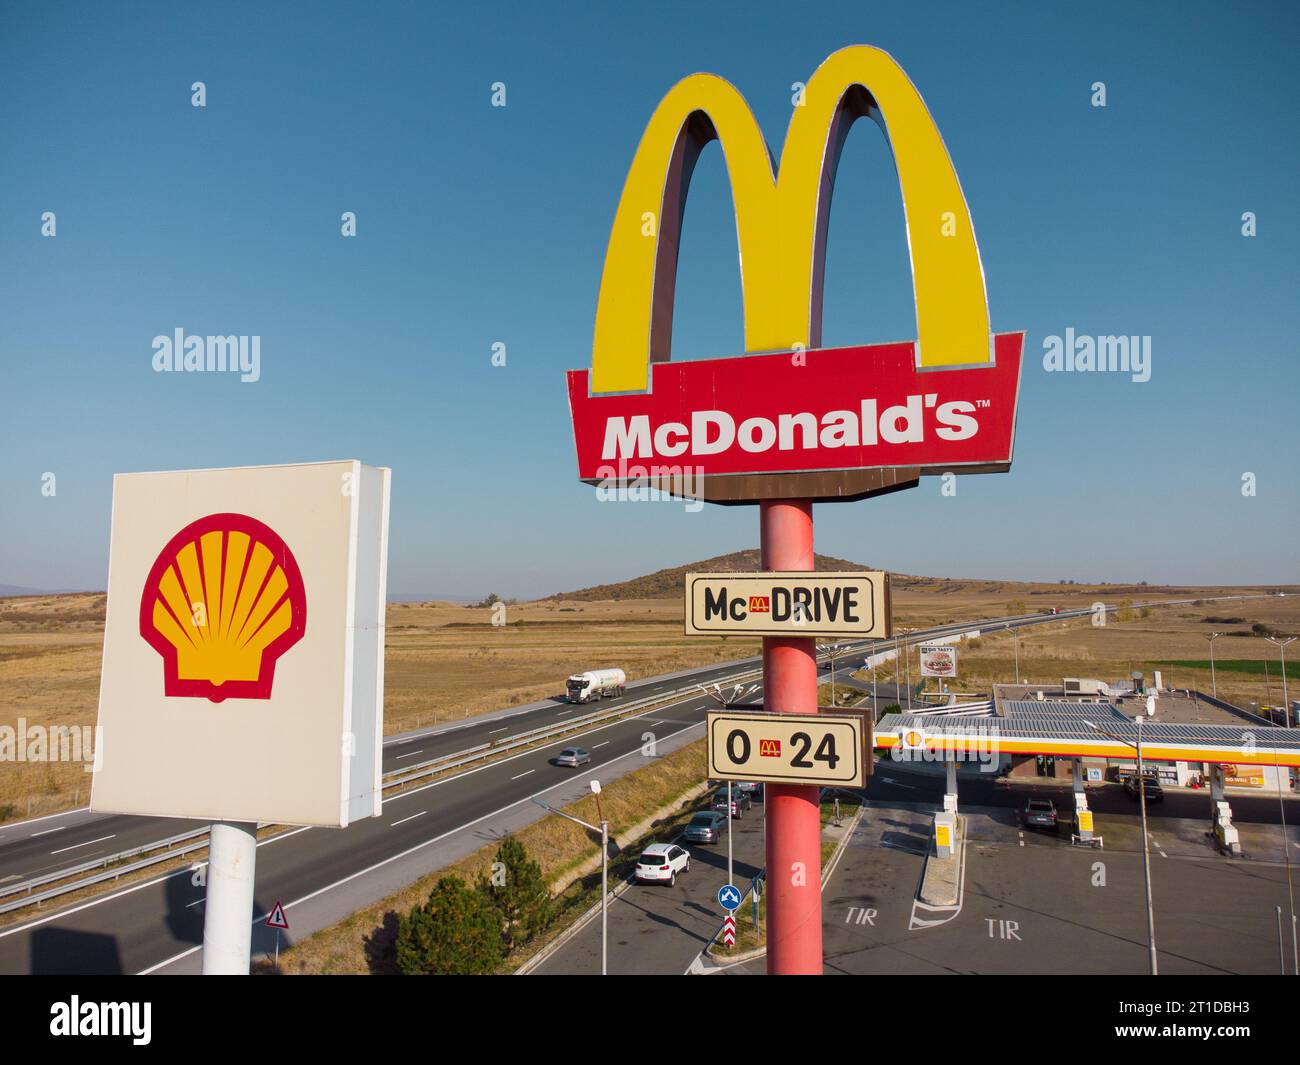 Drazhevo - novembre 1, McDonald's McDrive signe à la station de gaz Shell sur une autoroute dans la soirée vue aérienne le 1 novembre Drazhevo Bulgarie Banque D'Images